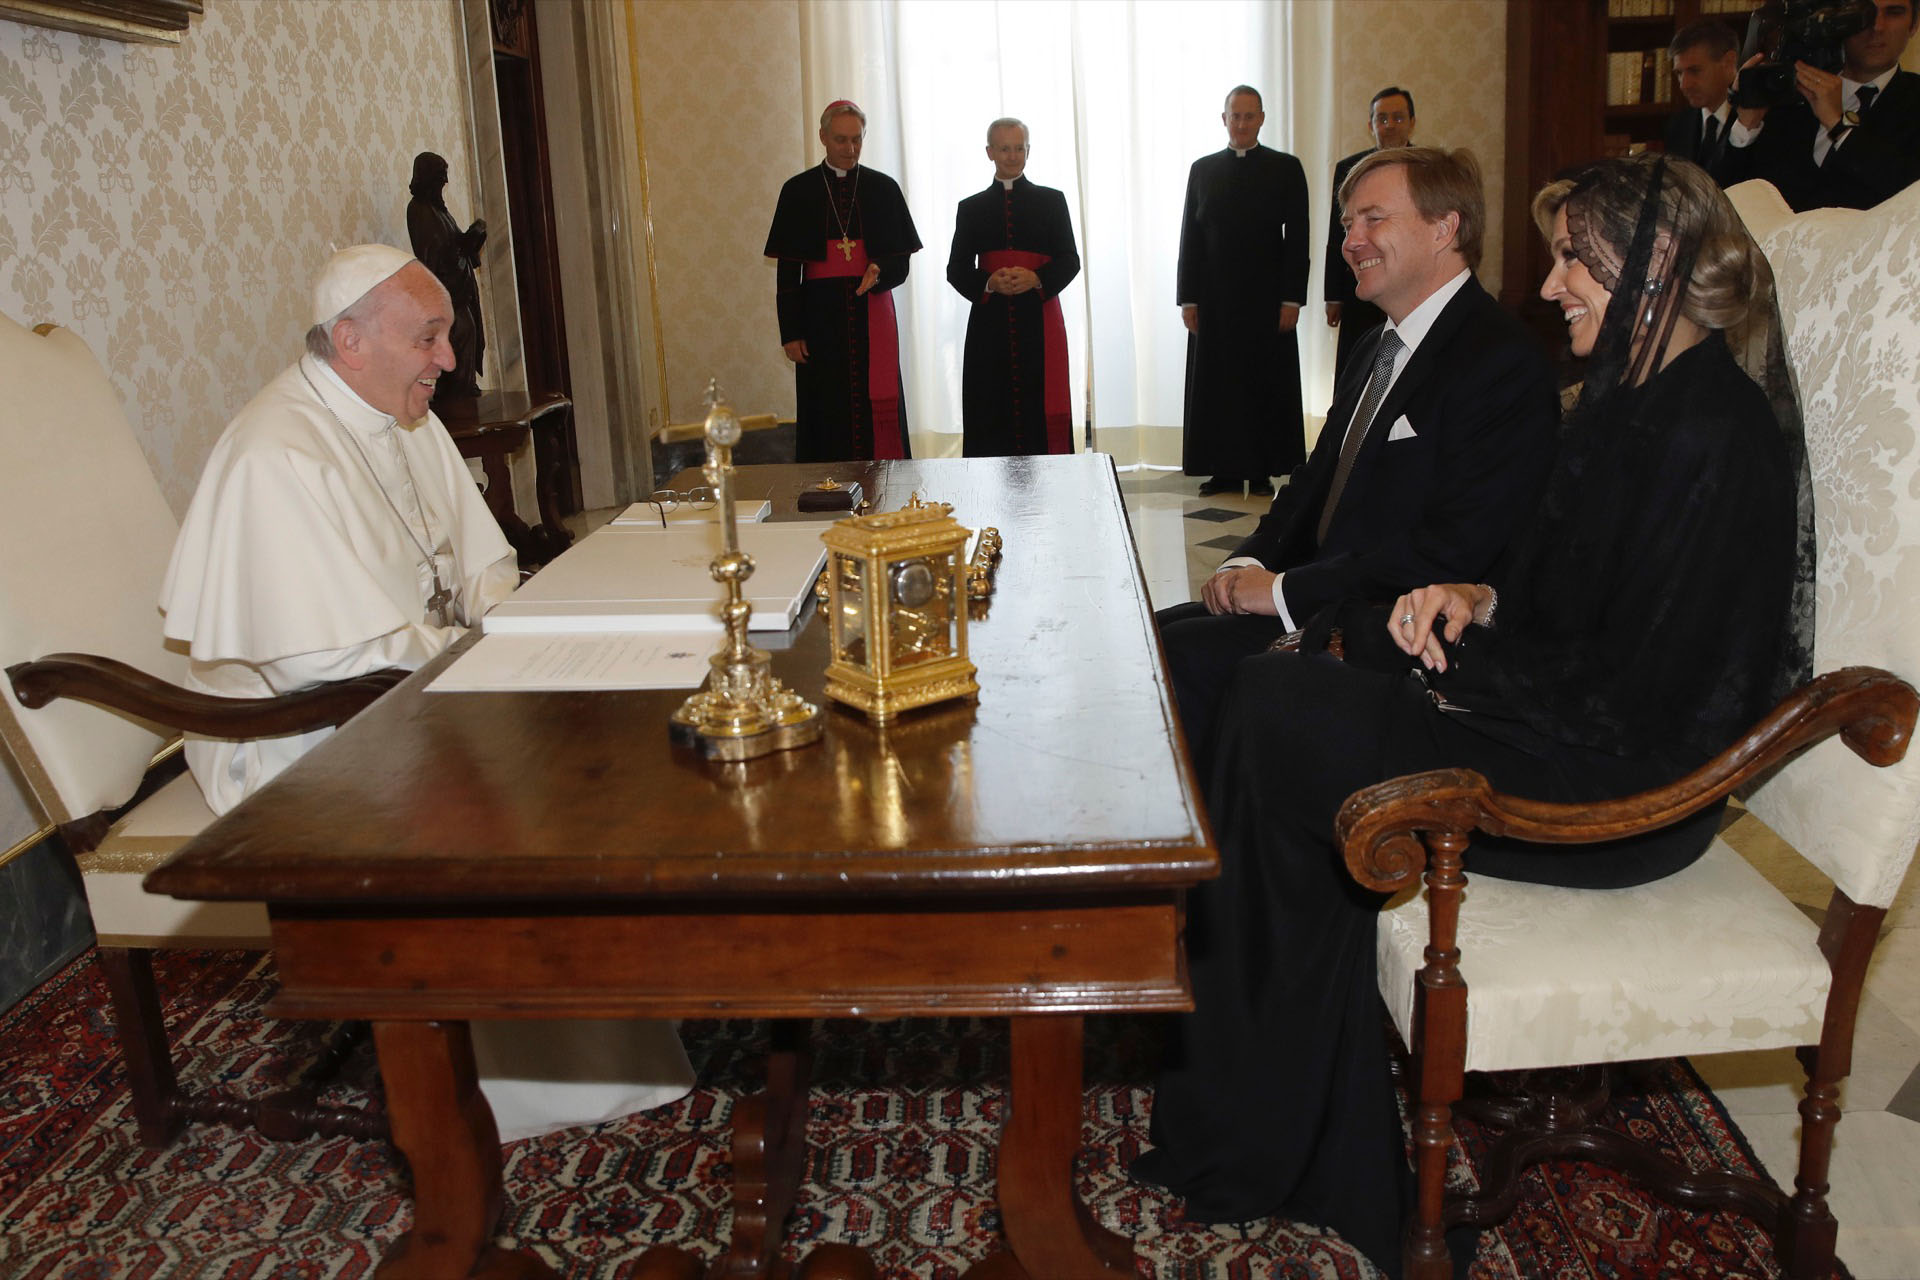 Su frescura y espontaneidad rompe los protocolos. Junto al rey Guillermo en su visita al Papa Francisco.